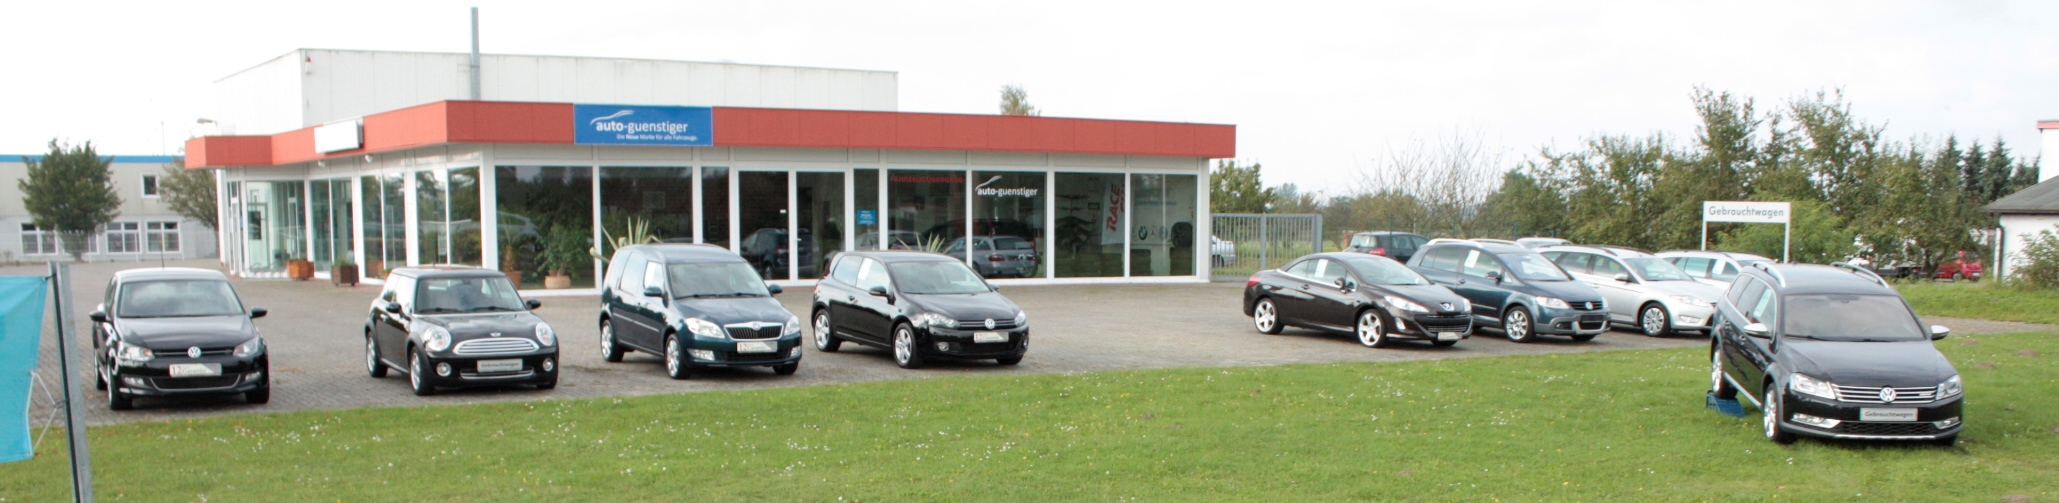 Bild 1 auto-guenstiger GmbH Inh. Lars Wassenaar in Friedland